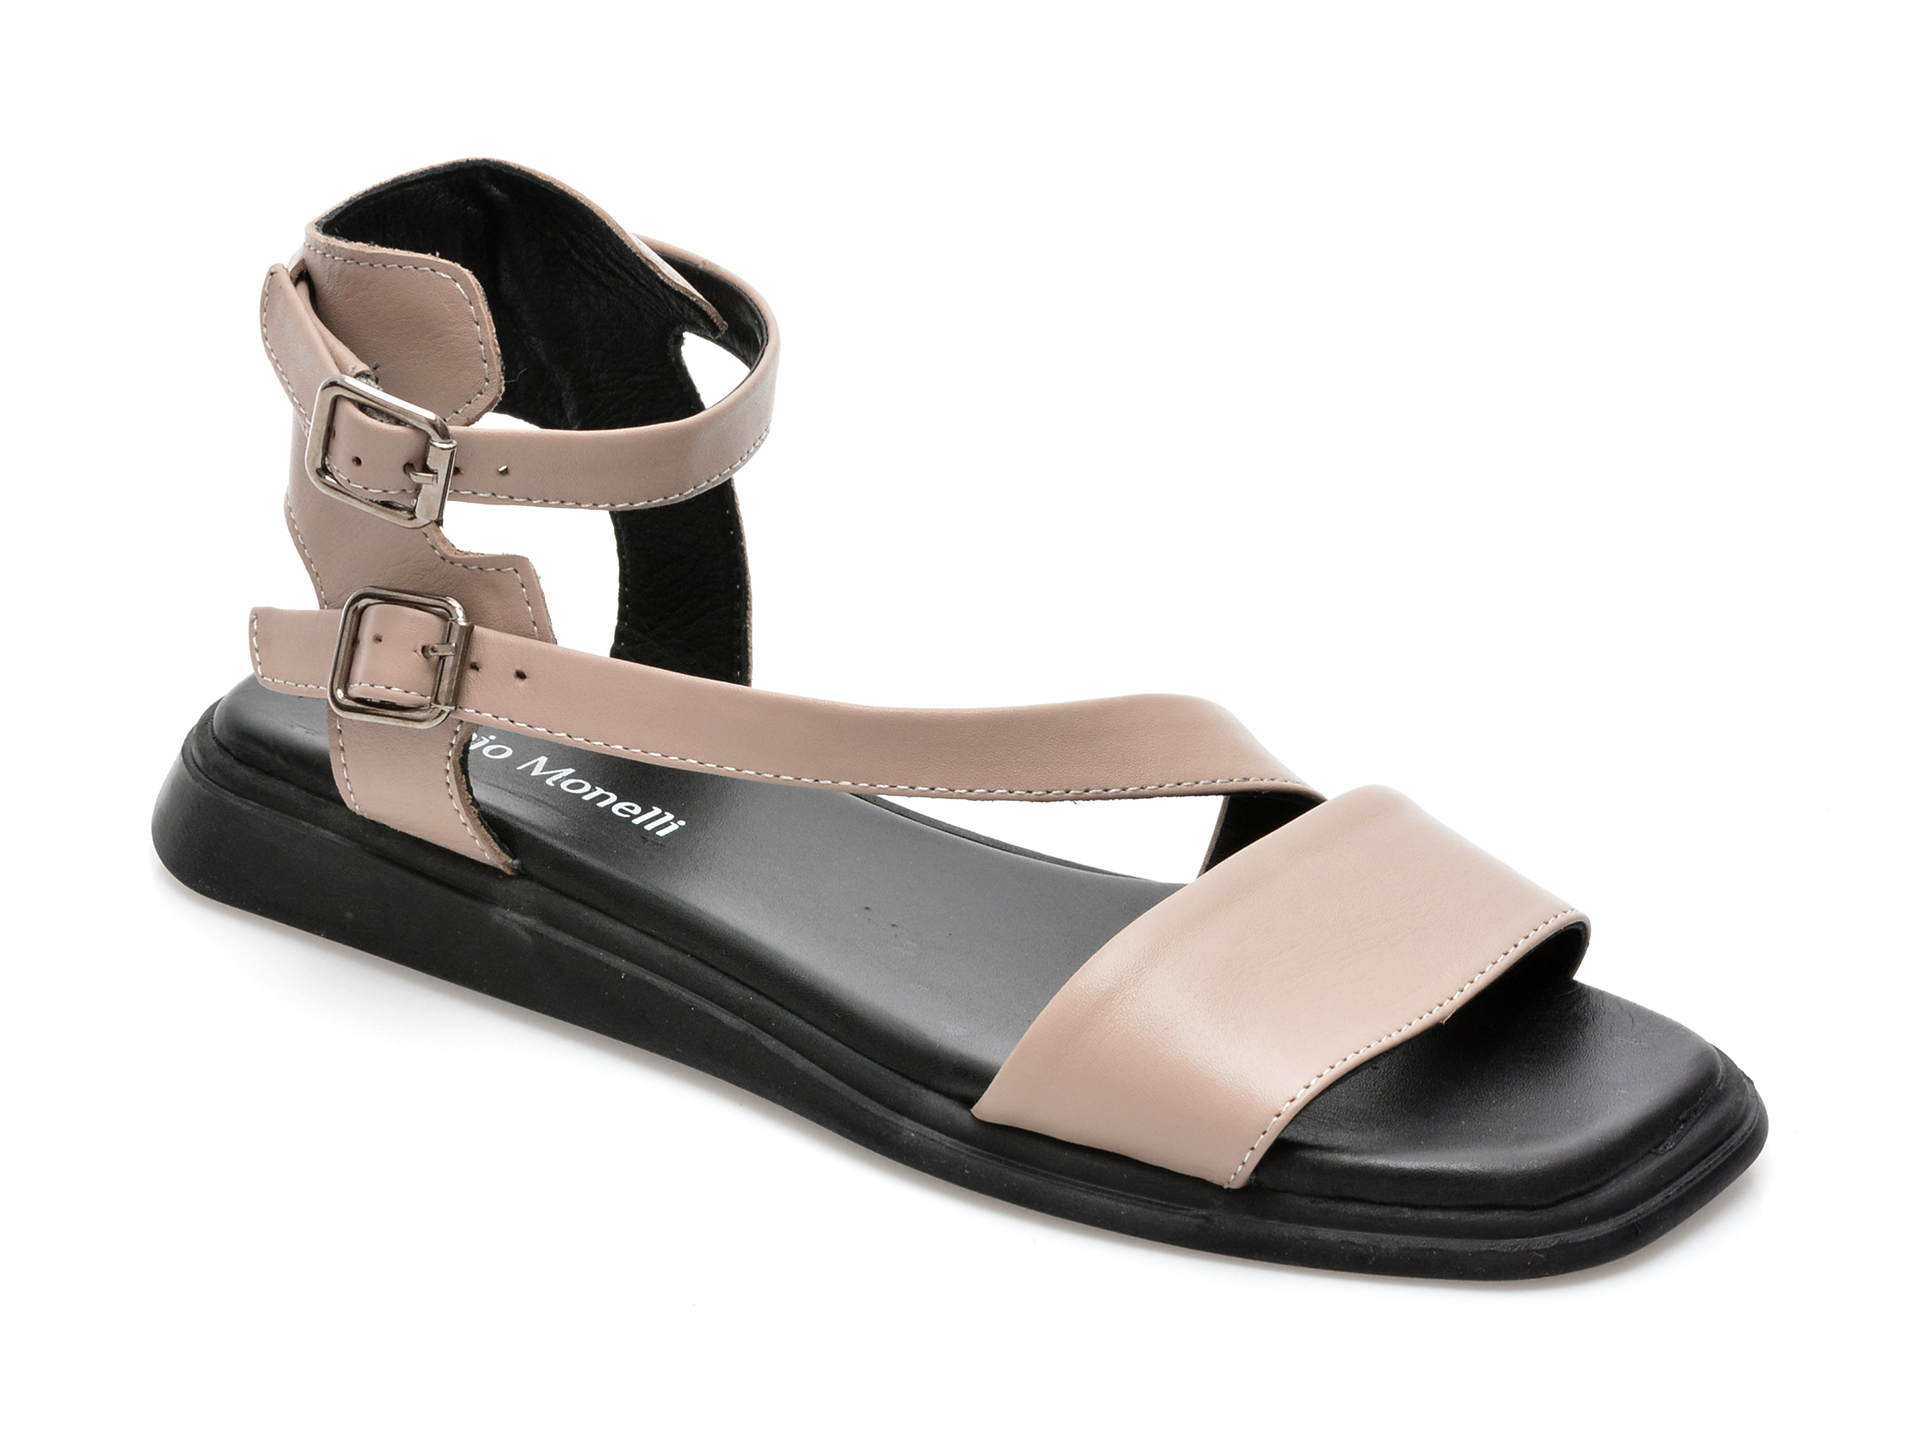 Sandale FABIO MONELLI gri, 691, din piele naturala /femei/sandale